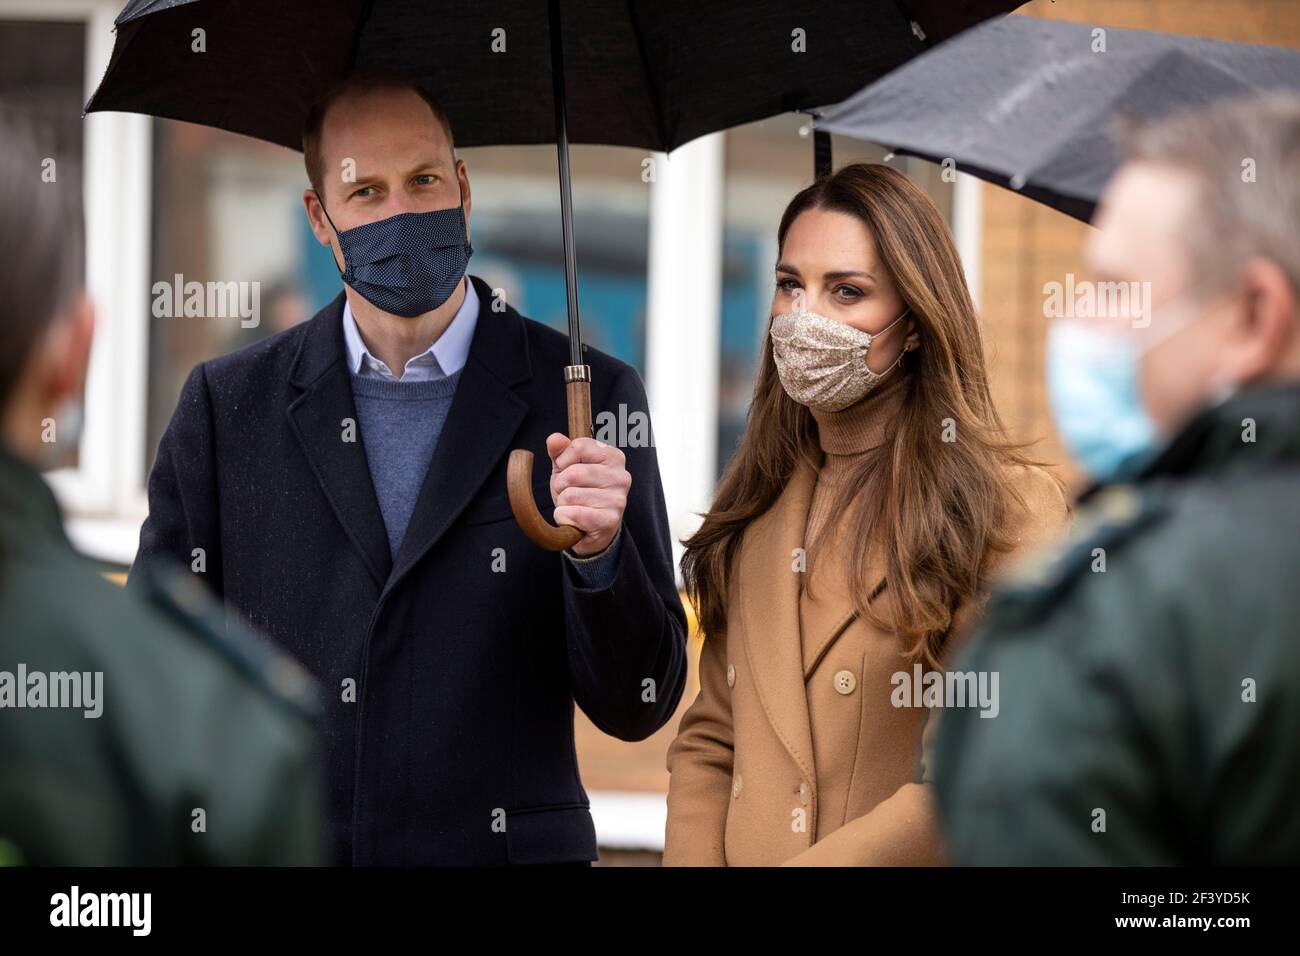 Le duc et la duchesse de Cambridge lors d'une visite à la station d'ambulance de Newham dans l'est de Londres. Date de la photo: Jeudi 18 mars 2021. Banque D'Images